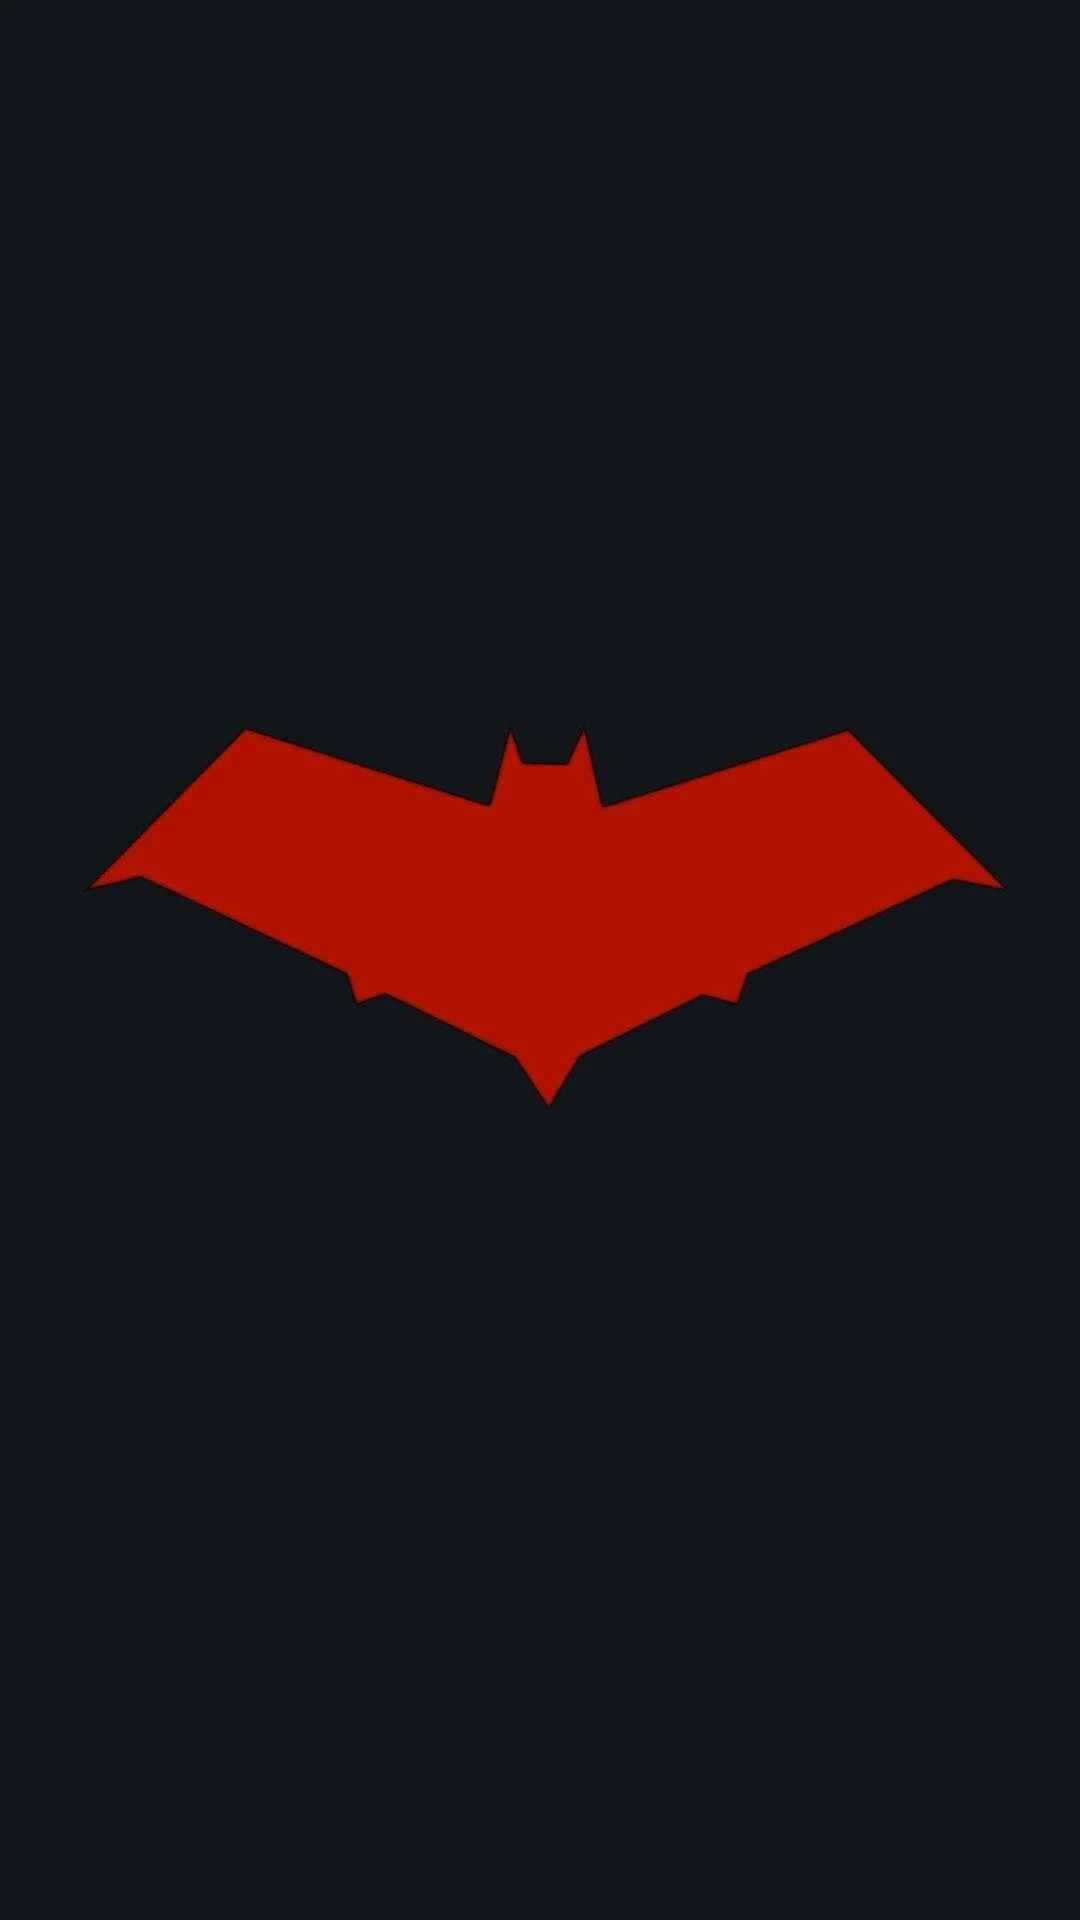 Photos-Batman-Logo-iPhone-Wallpapers-001